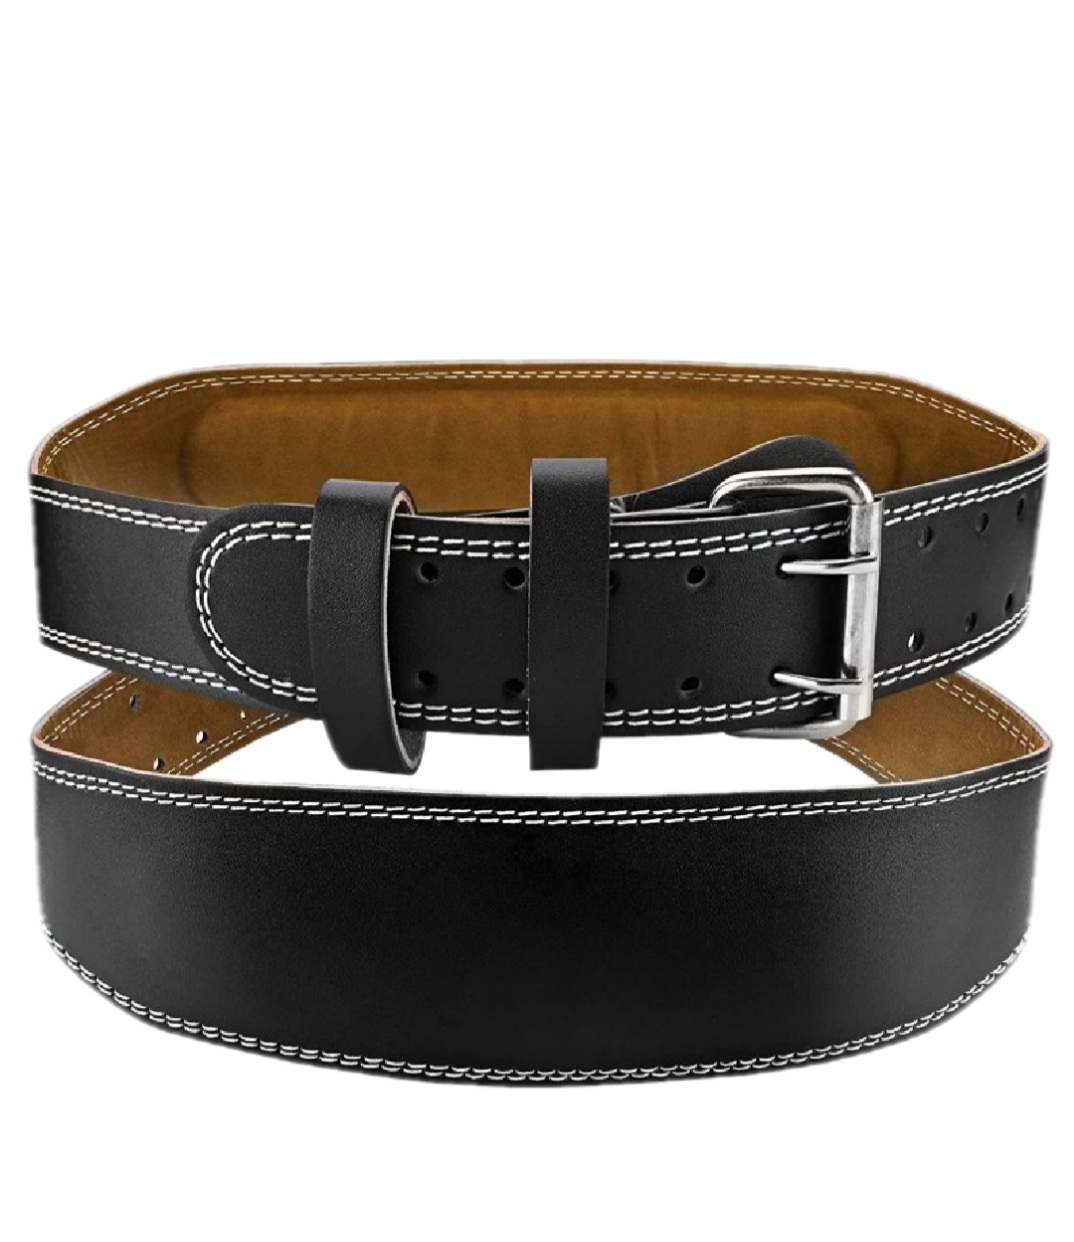 Cinturón Lumbar De Cuero Para Cintura De 85 A 110cm Ded